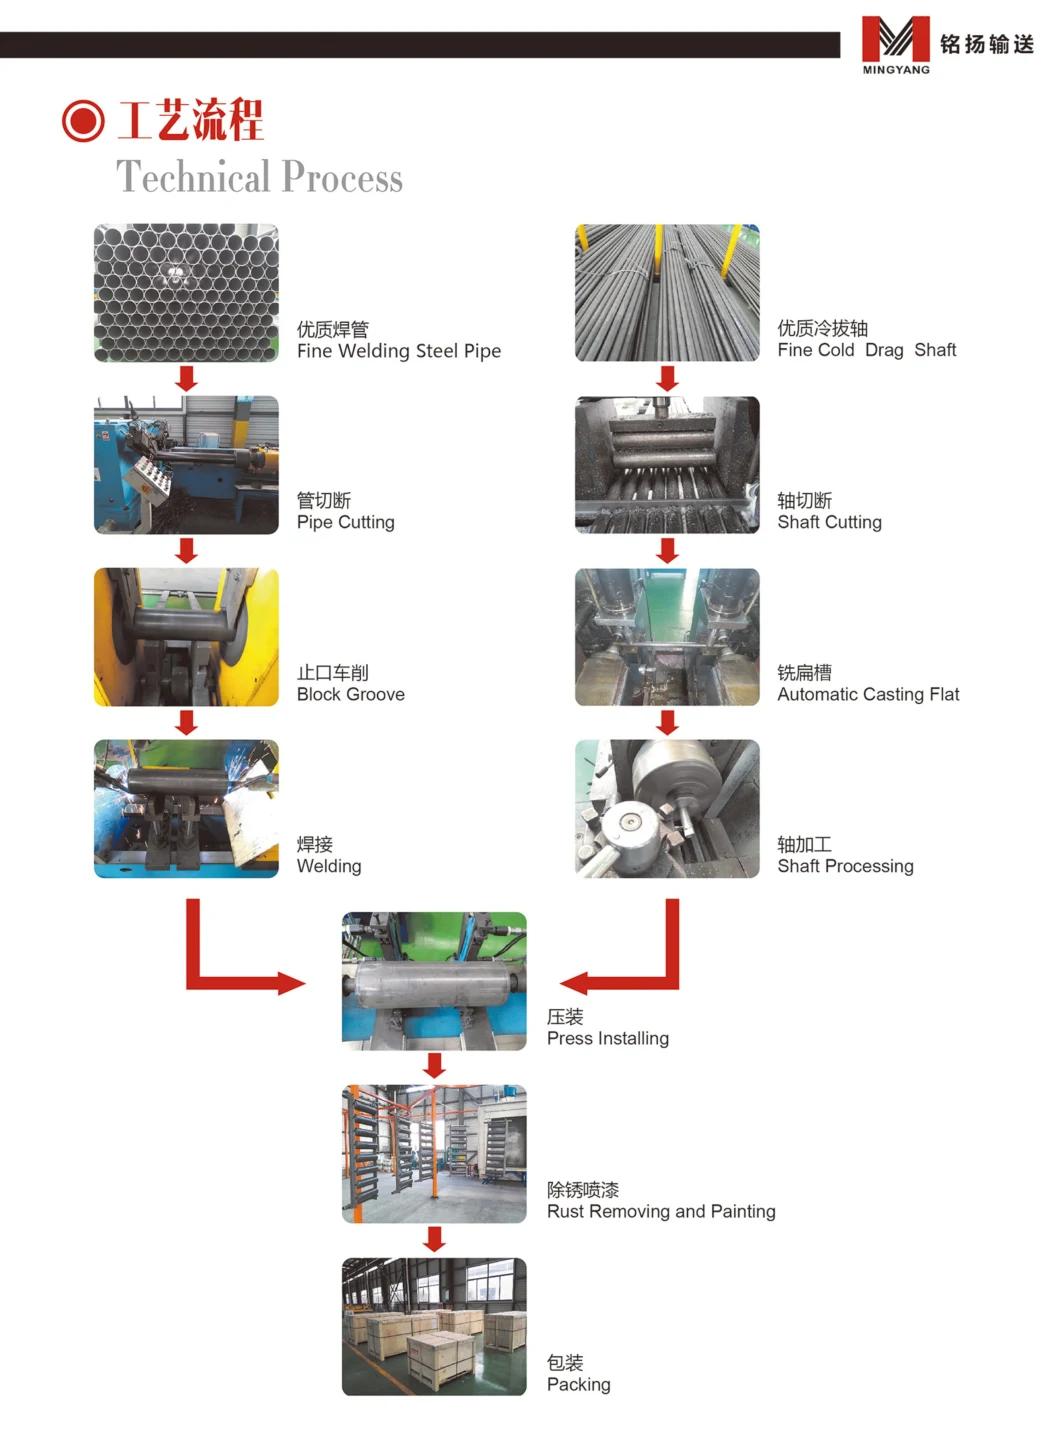 Customized Rubber Disc Return Roller / Rdrt Roller for Conveyor Belt System